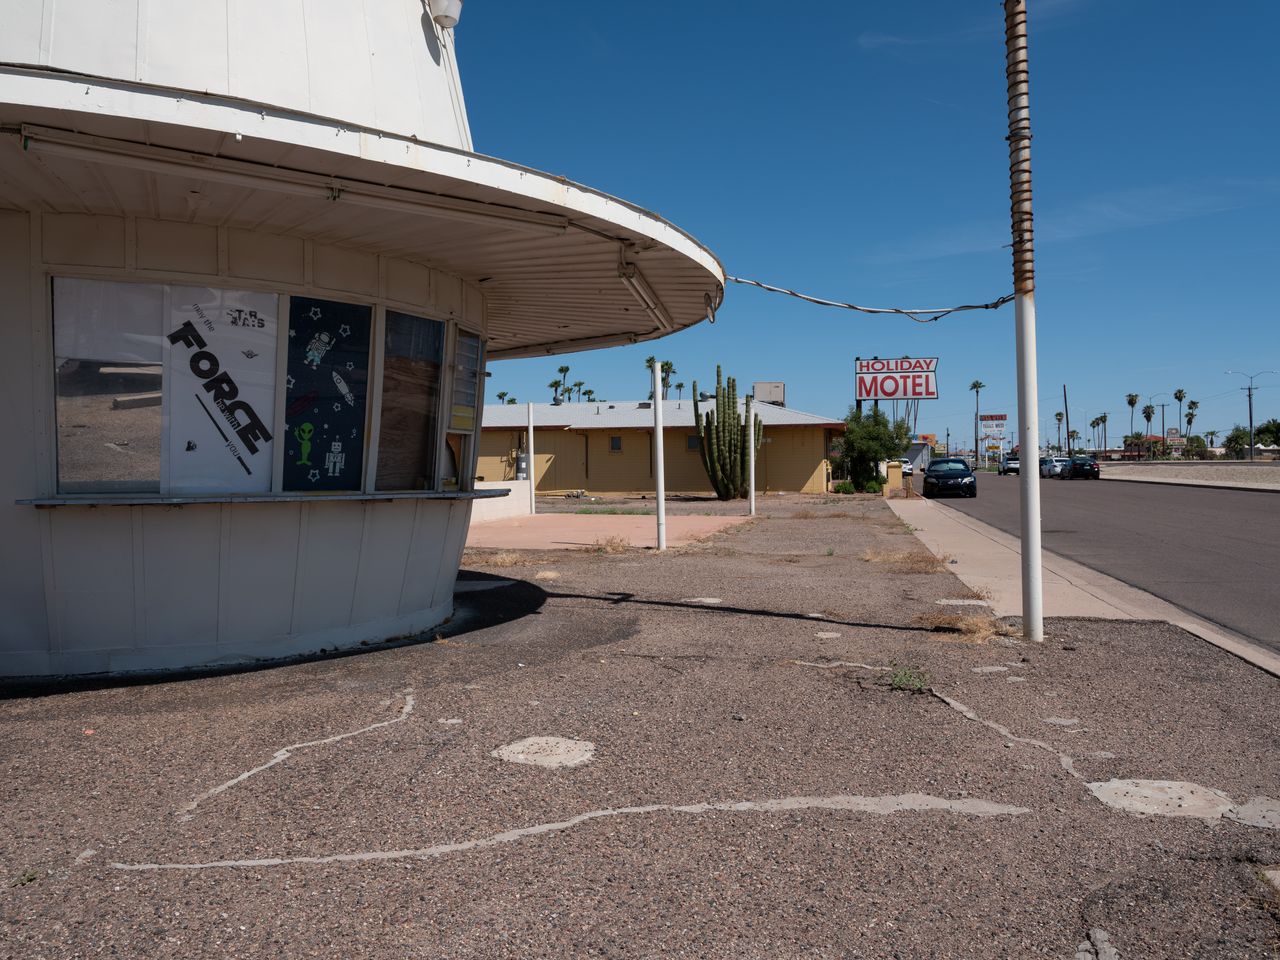 Street scene in Mesa, Arizona.